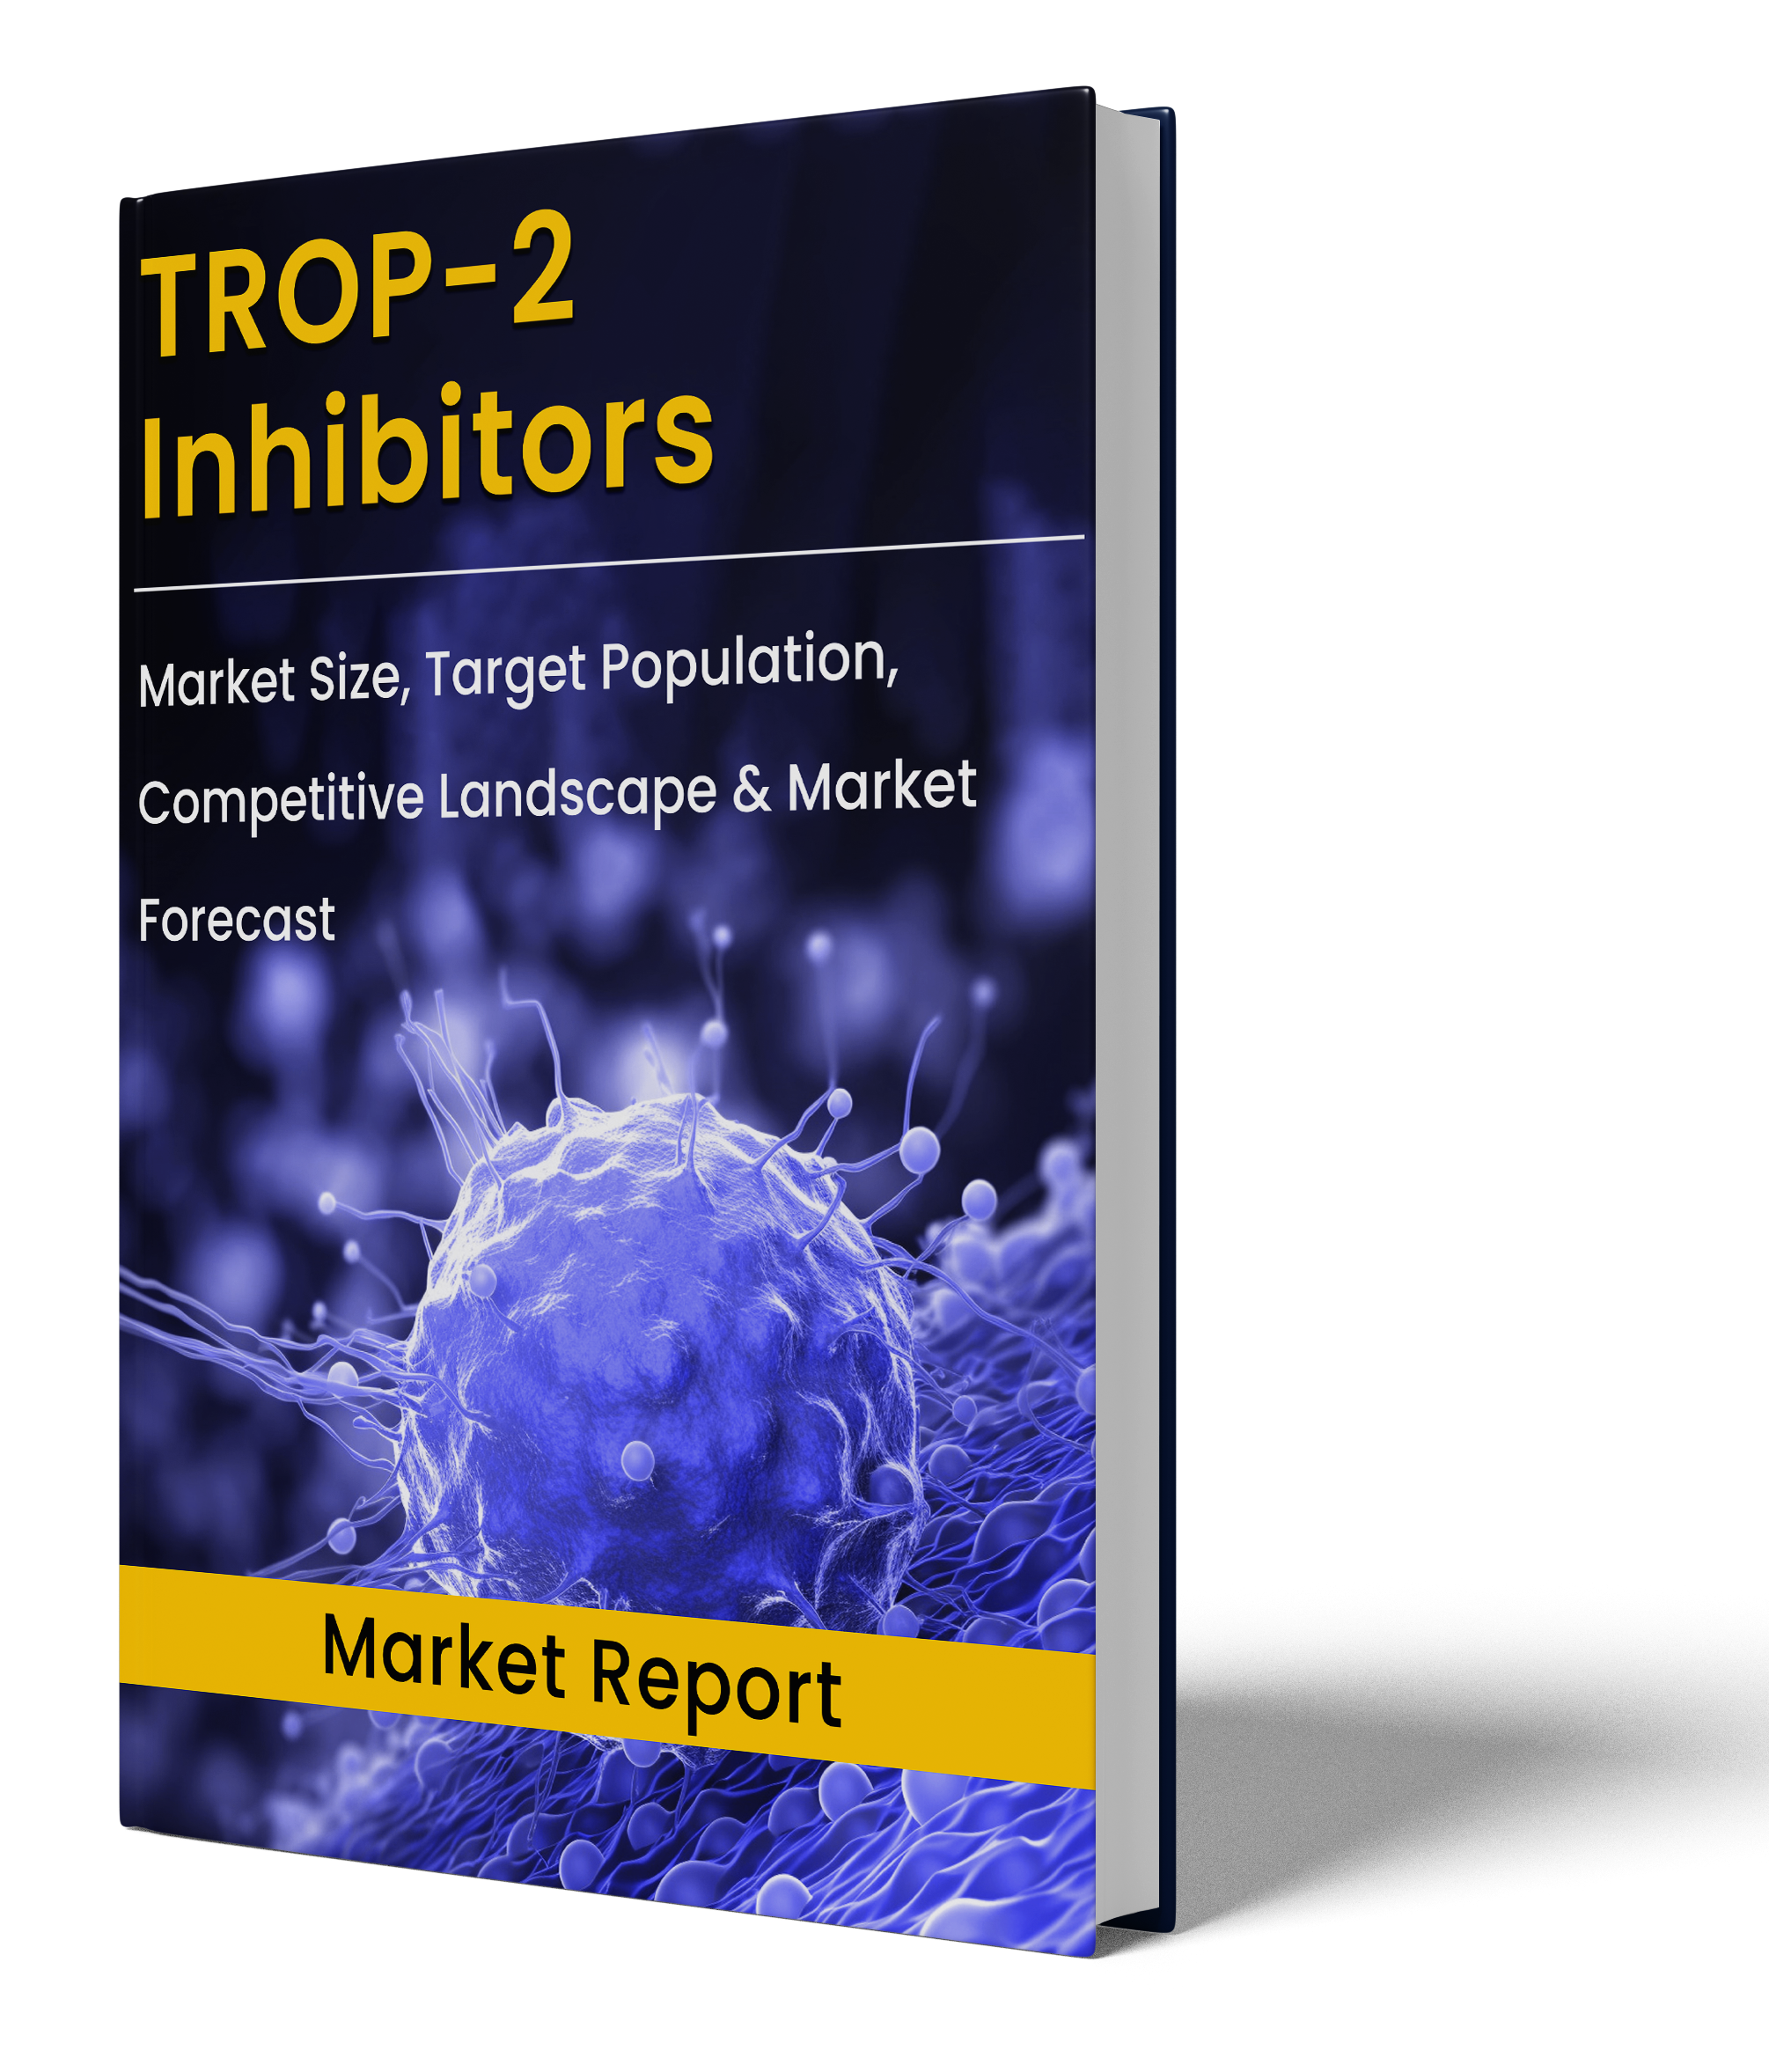 TROP-2 Inhibitors Market Report